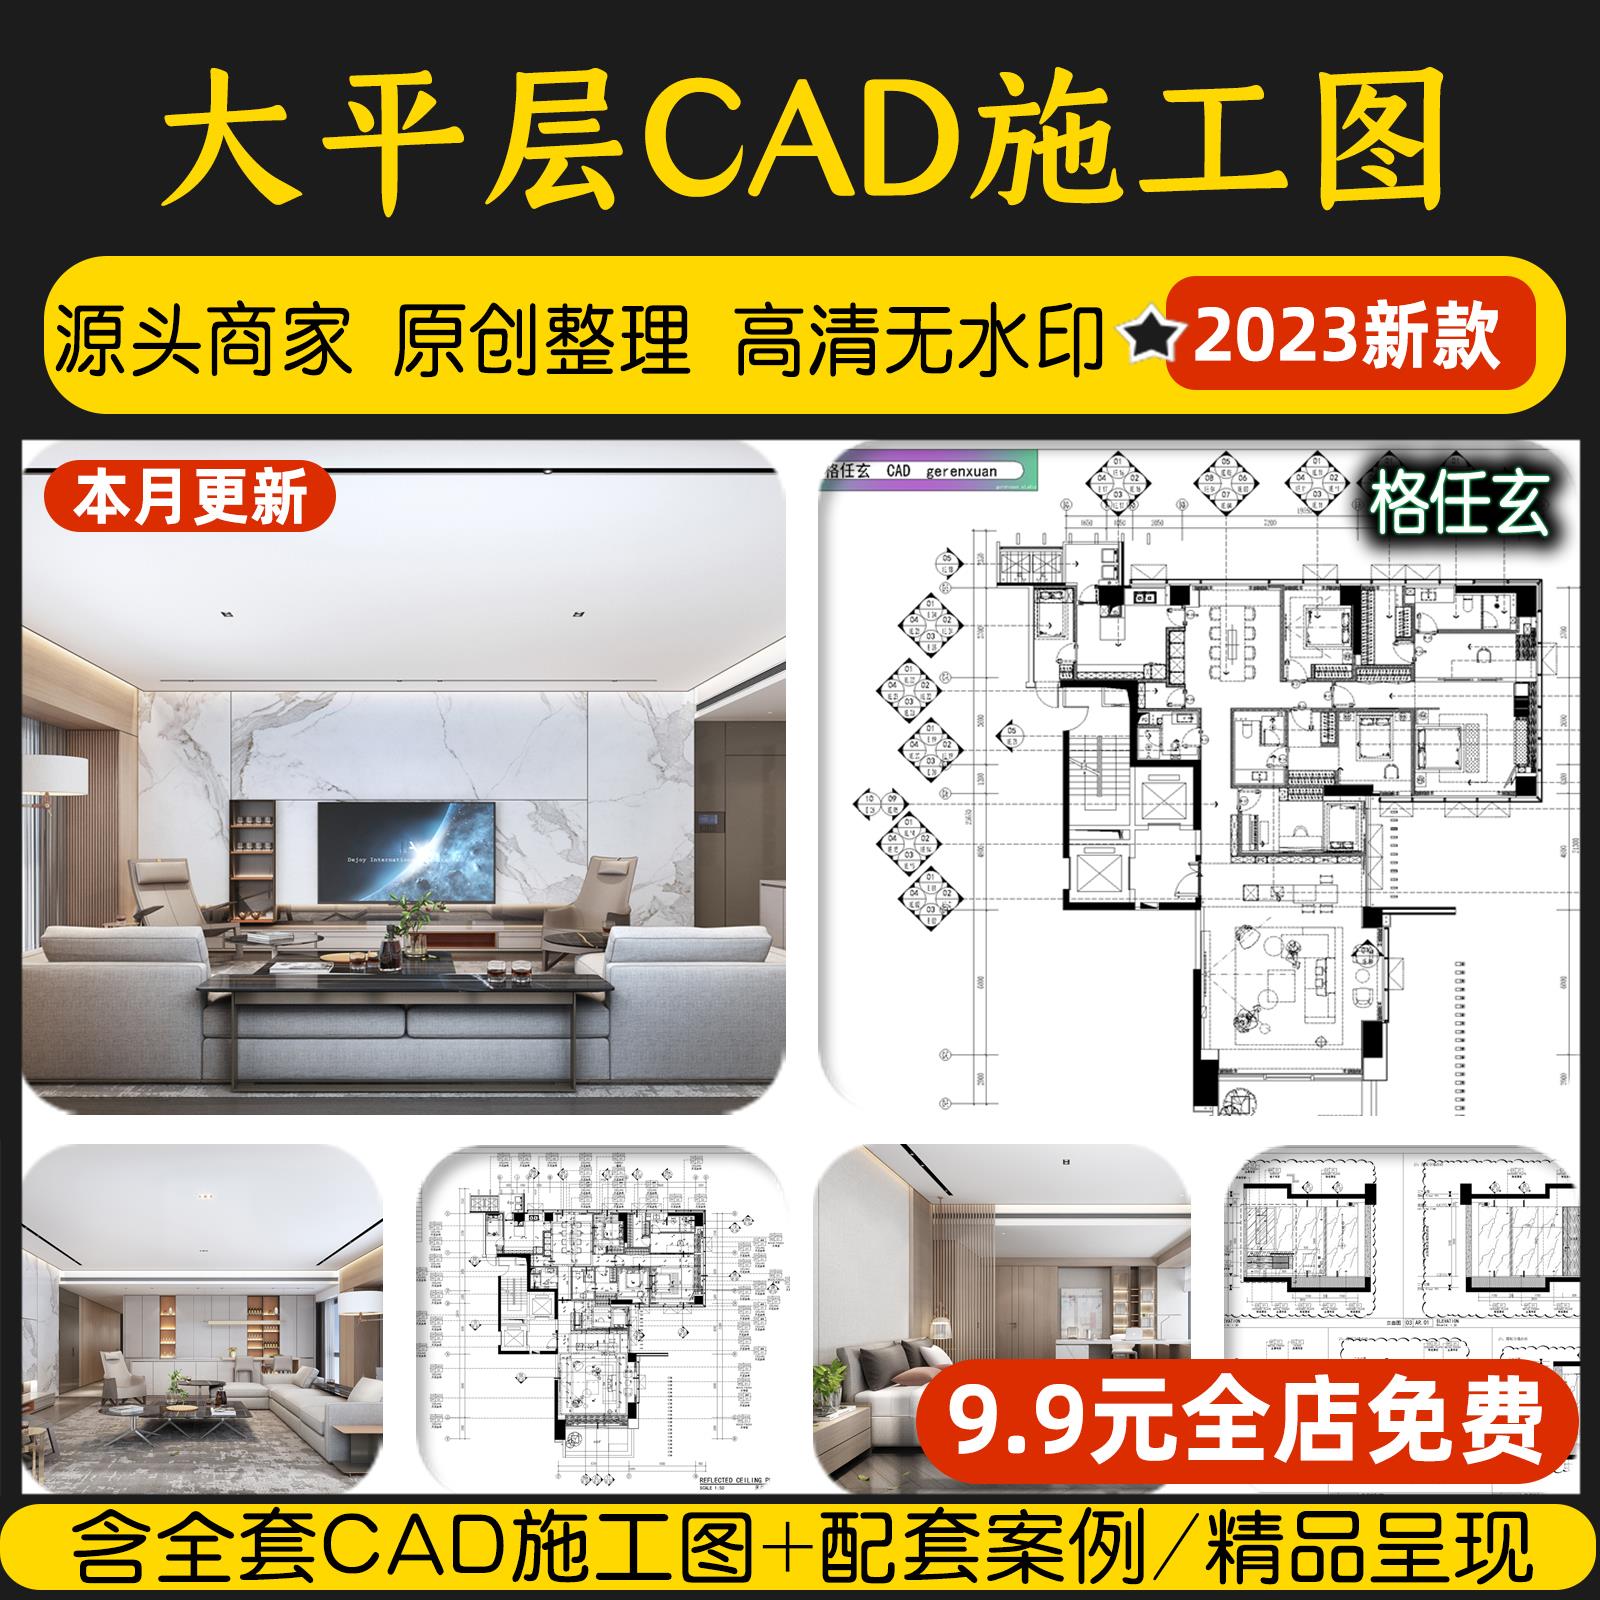 大平层豪宅大户型装修设计效果图案例家装室内家居全套CAD施工图